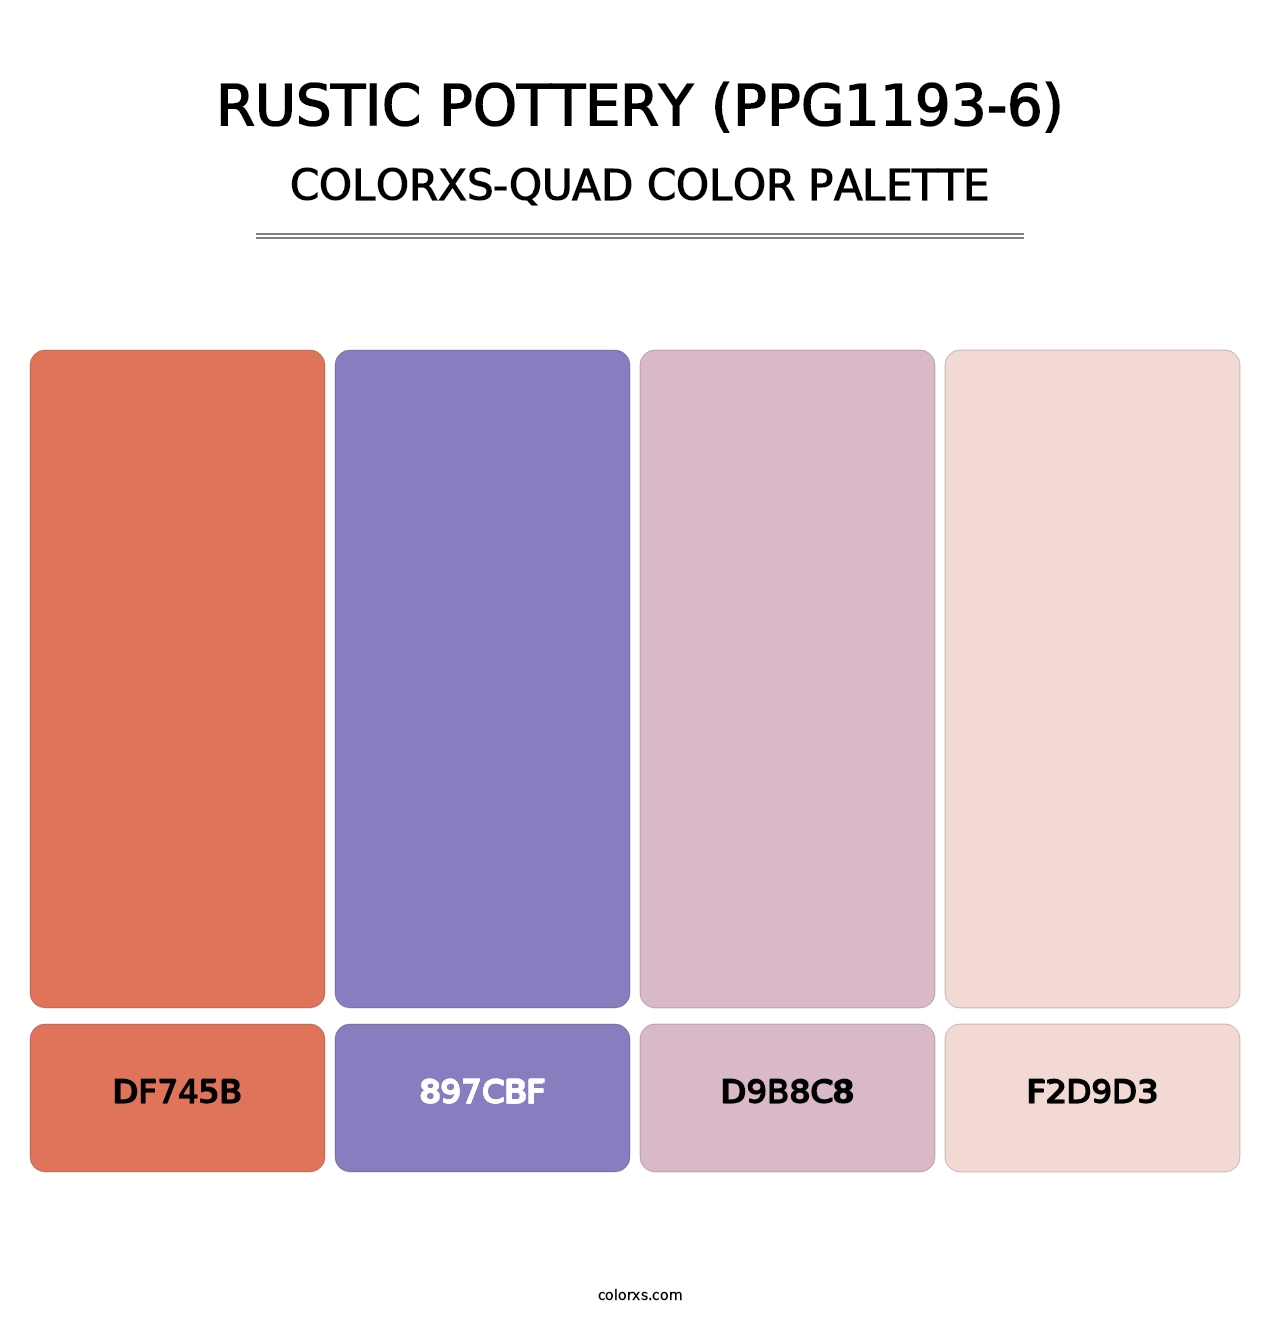 Rustic Pottery (PPG1193-6) - Colorxs Quad Palette